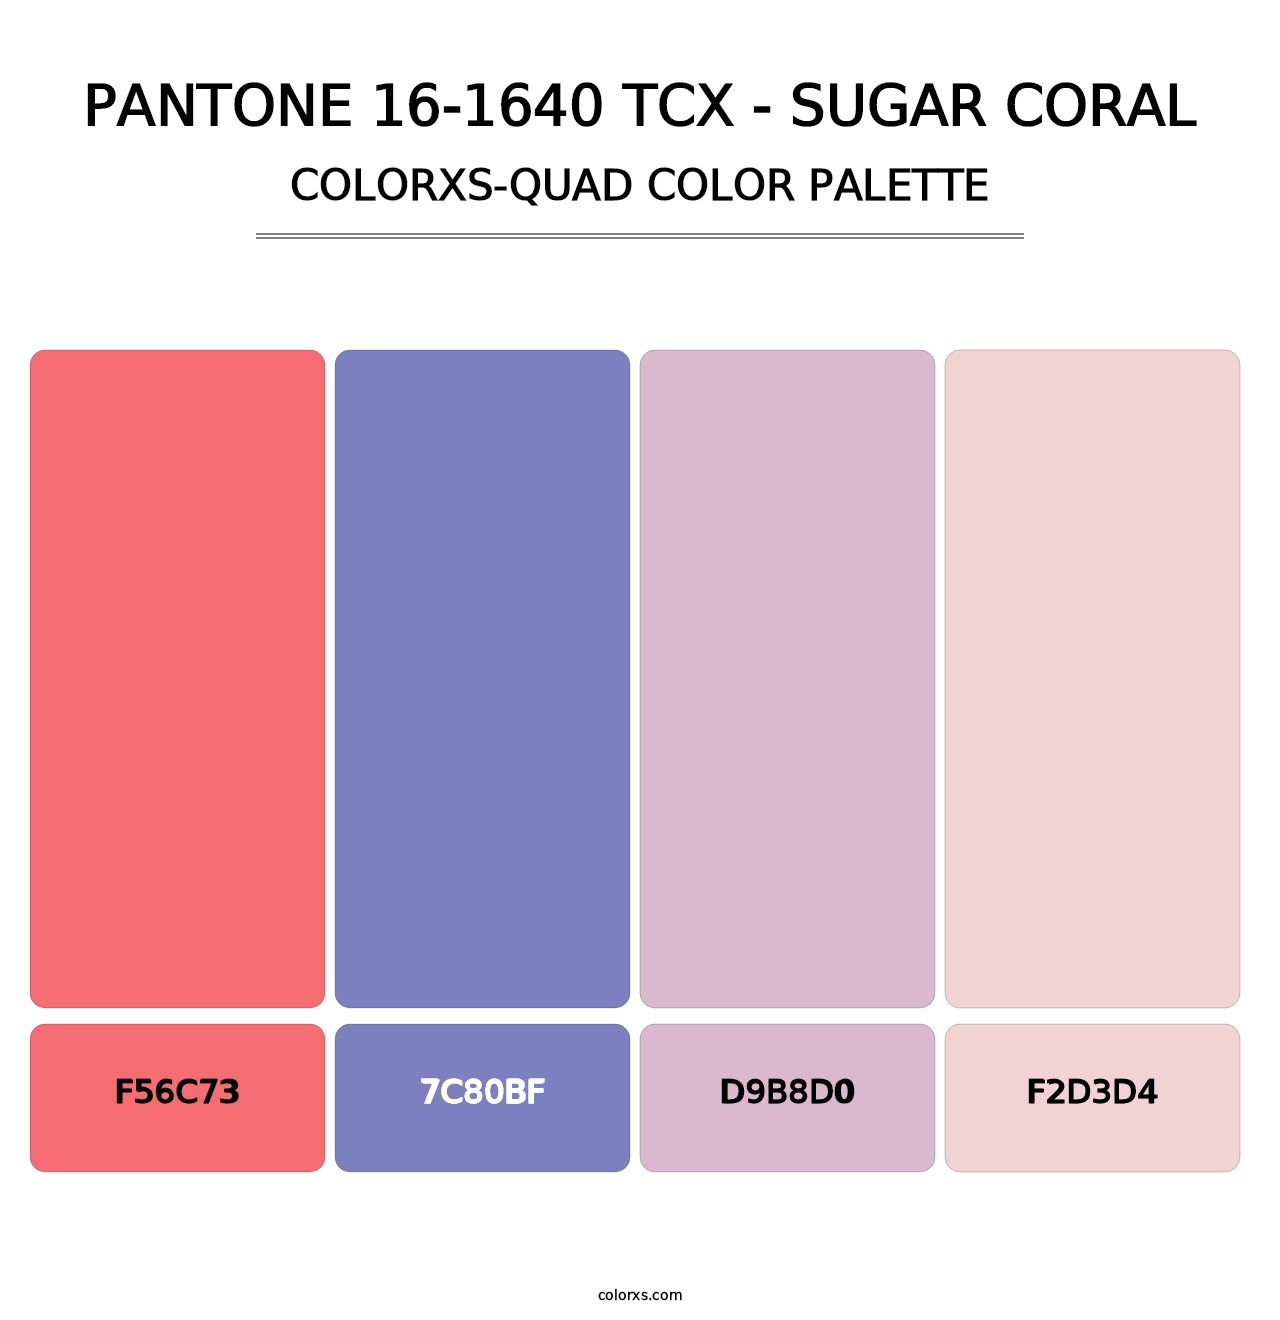 PANTONE 16-1640 TCX - Sugar Coral - Colorxs Quad Palette